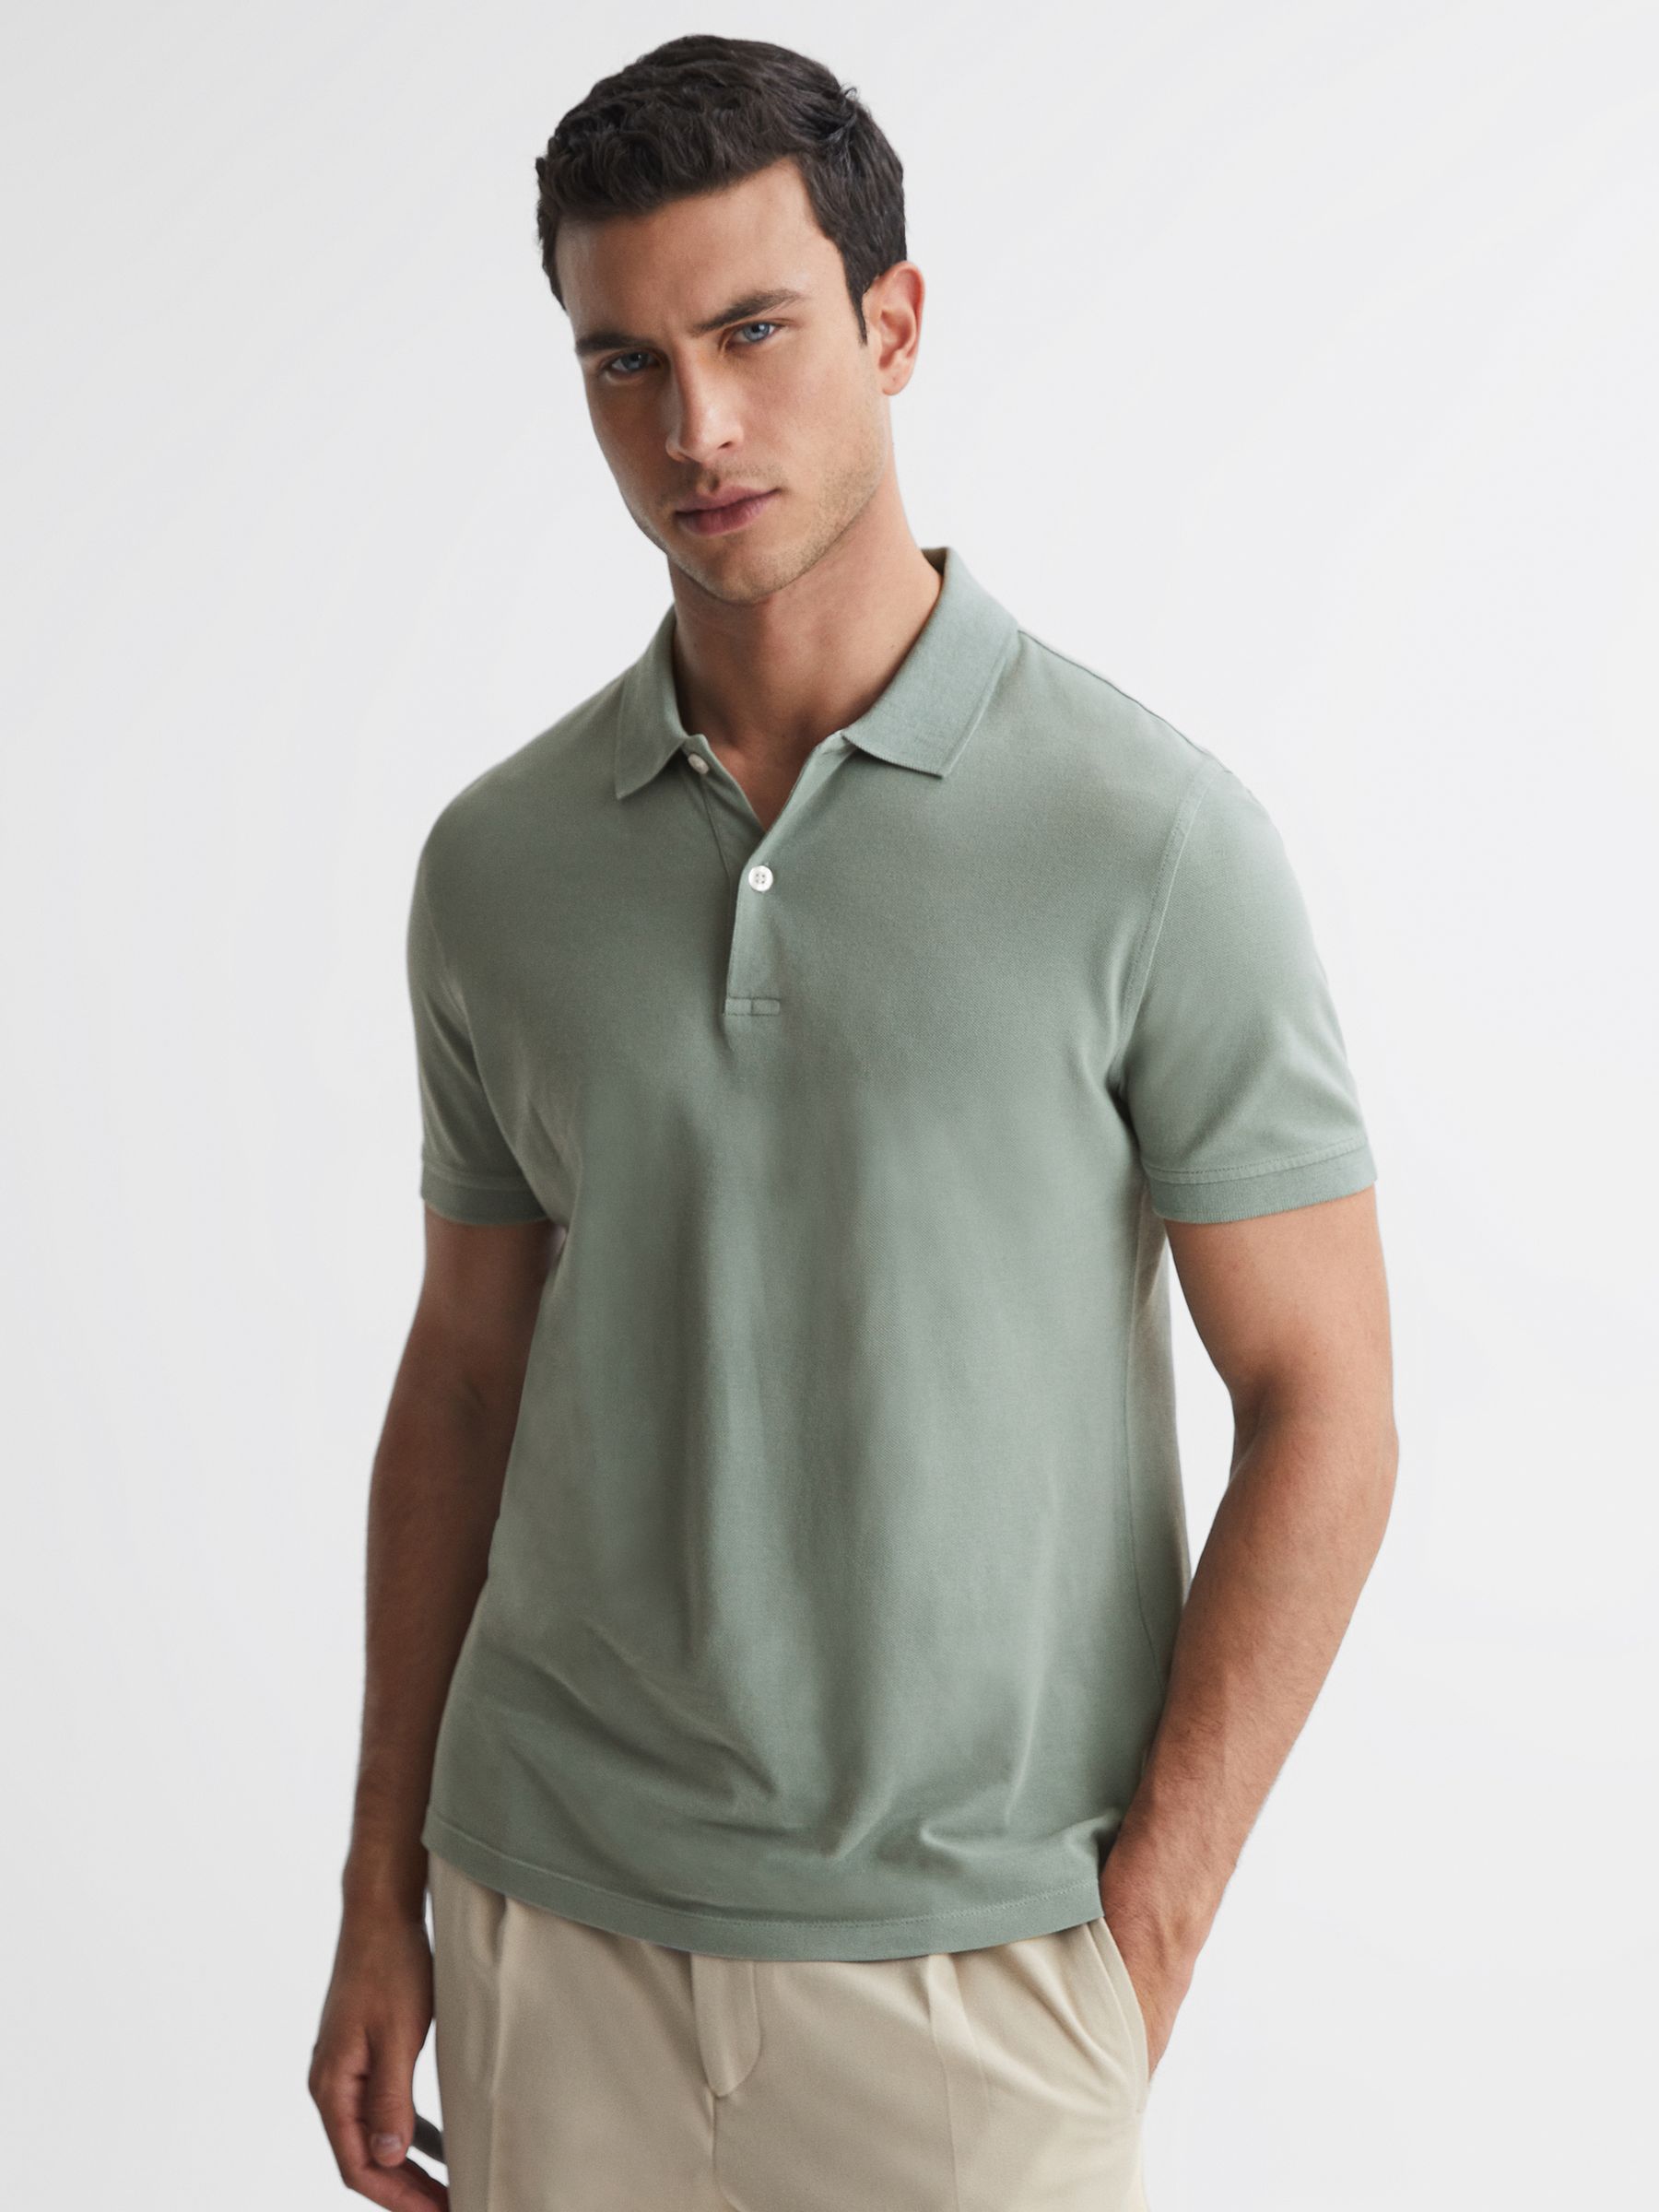 Reiss Puro Slim Fit Garment Dye Polo Shirt | REISS USA